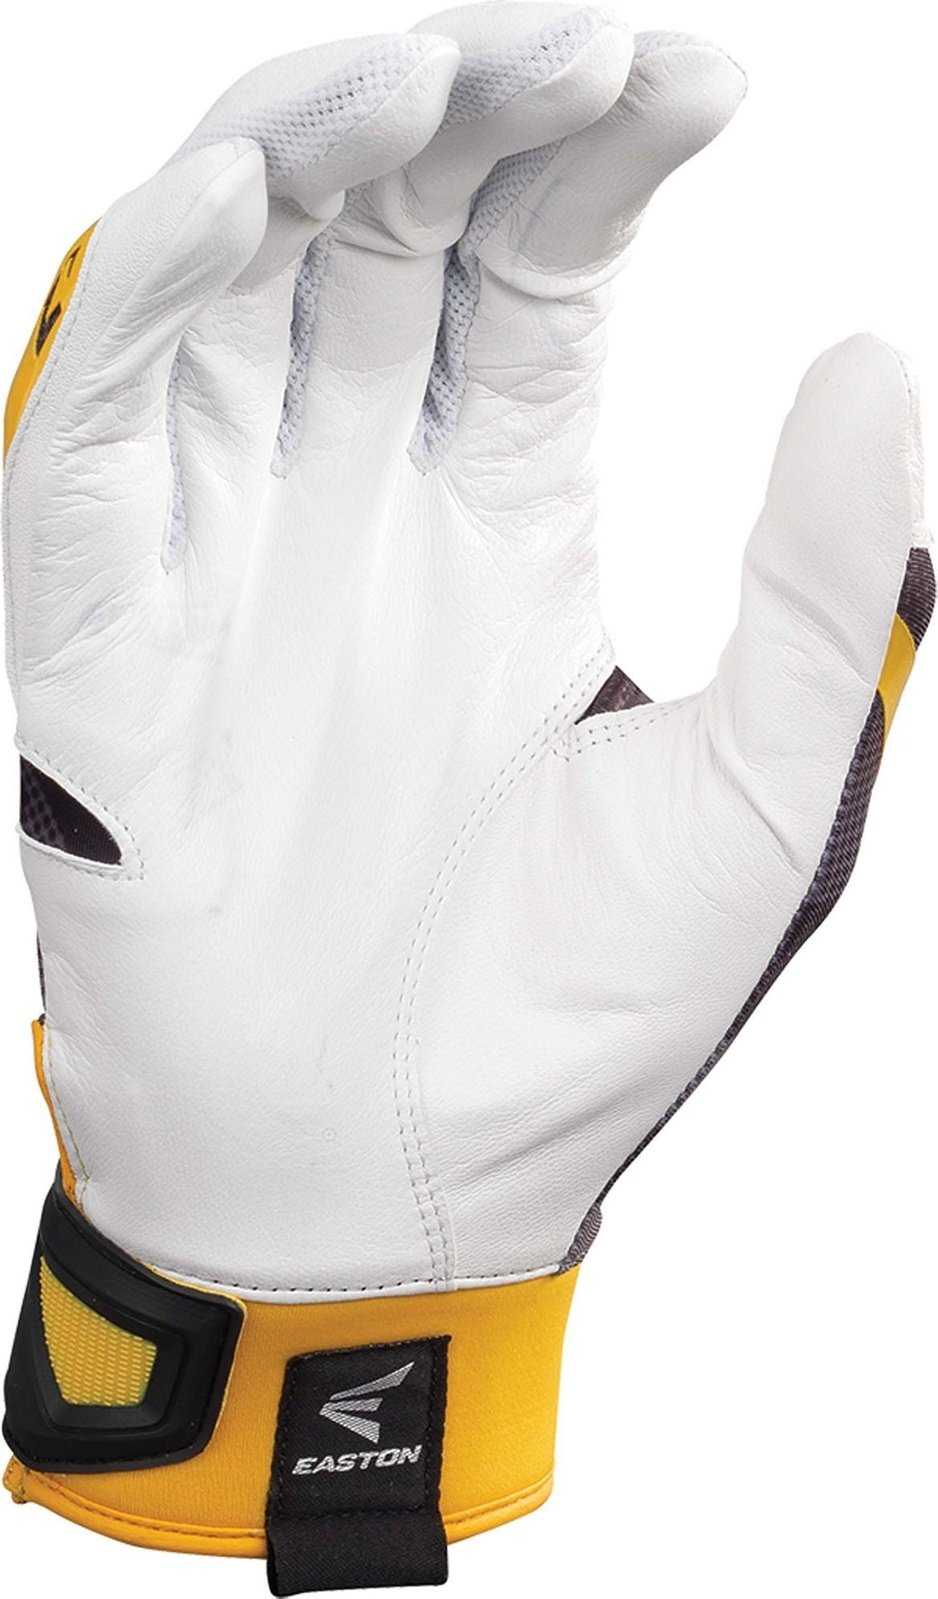 Easton Z7 Hyperskin Batting Gloves - White Navy Camo